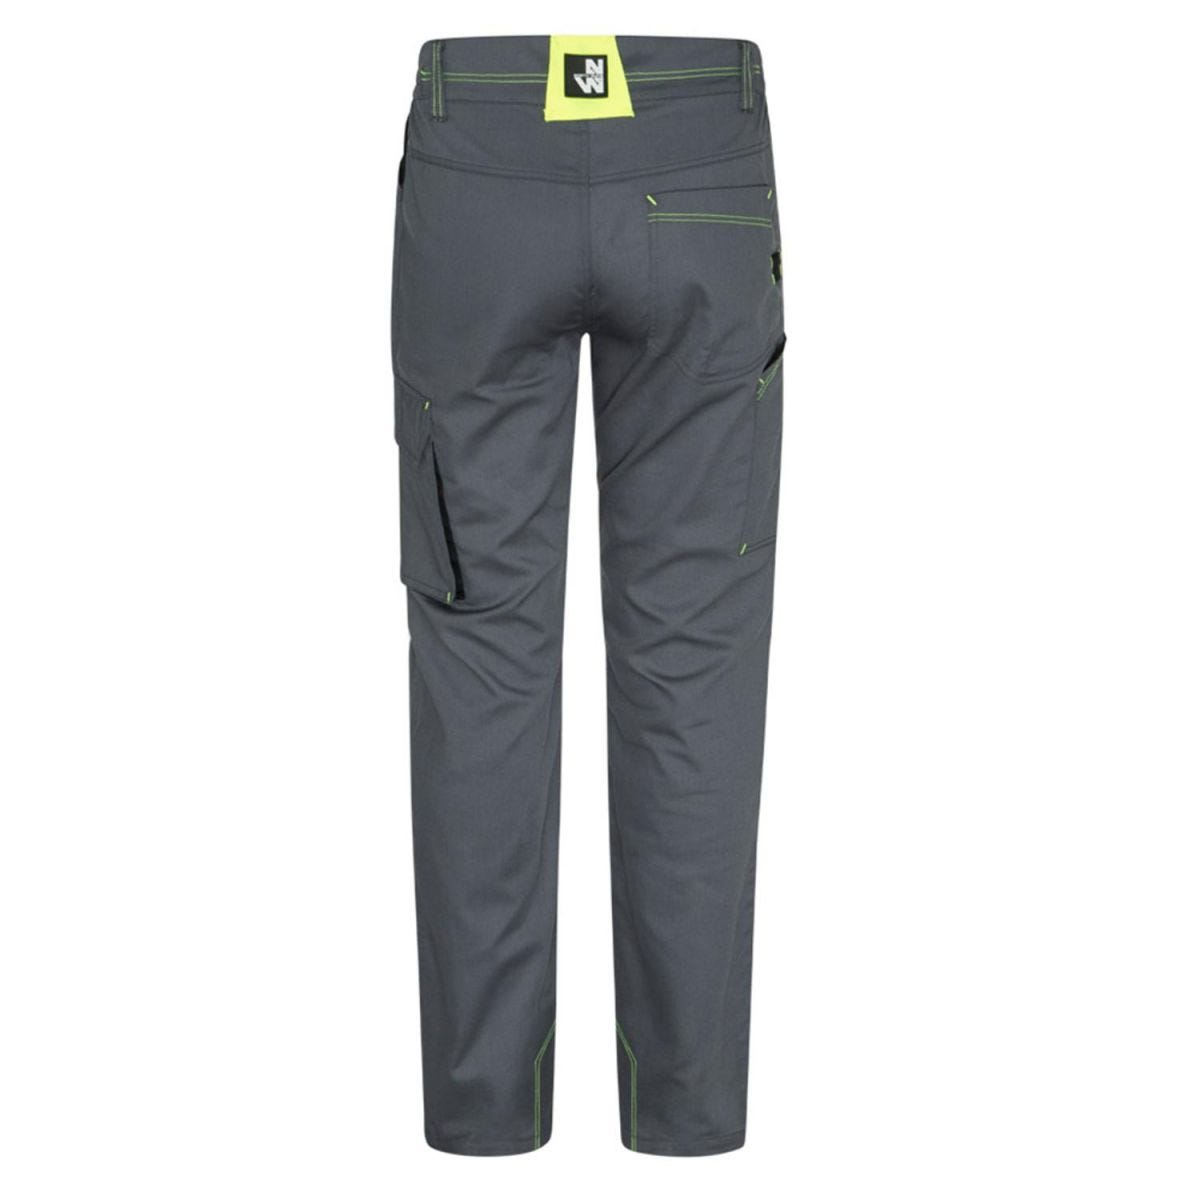 Pantalon Marlow gris et jaune fluo - North Ways - Taille XL 2